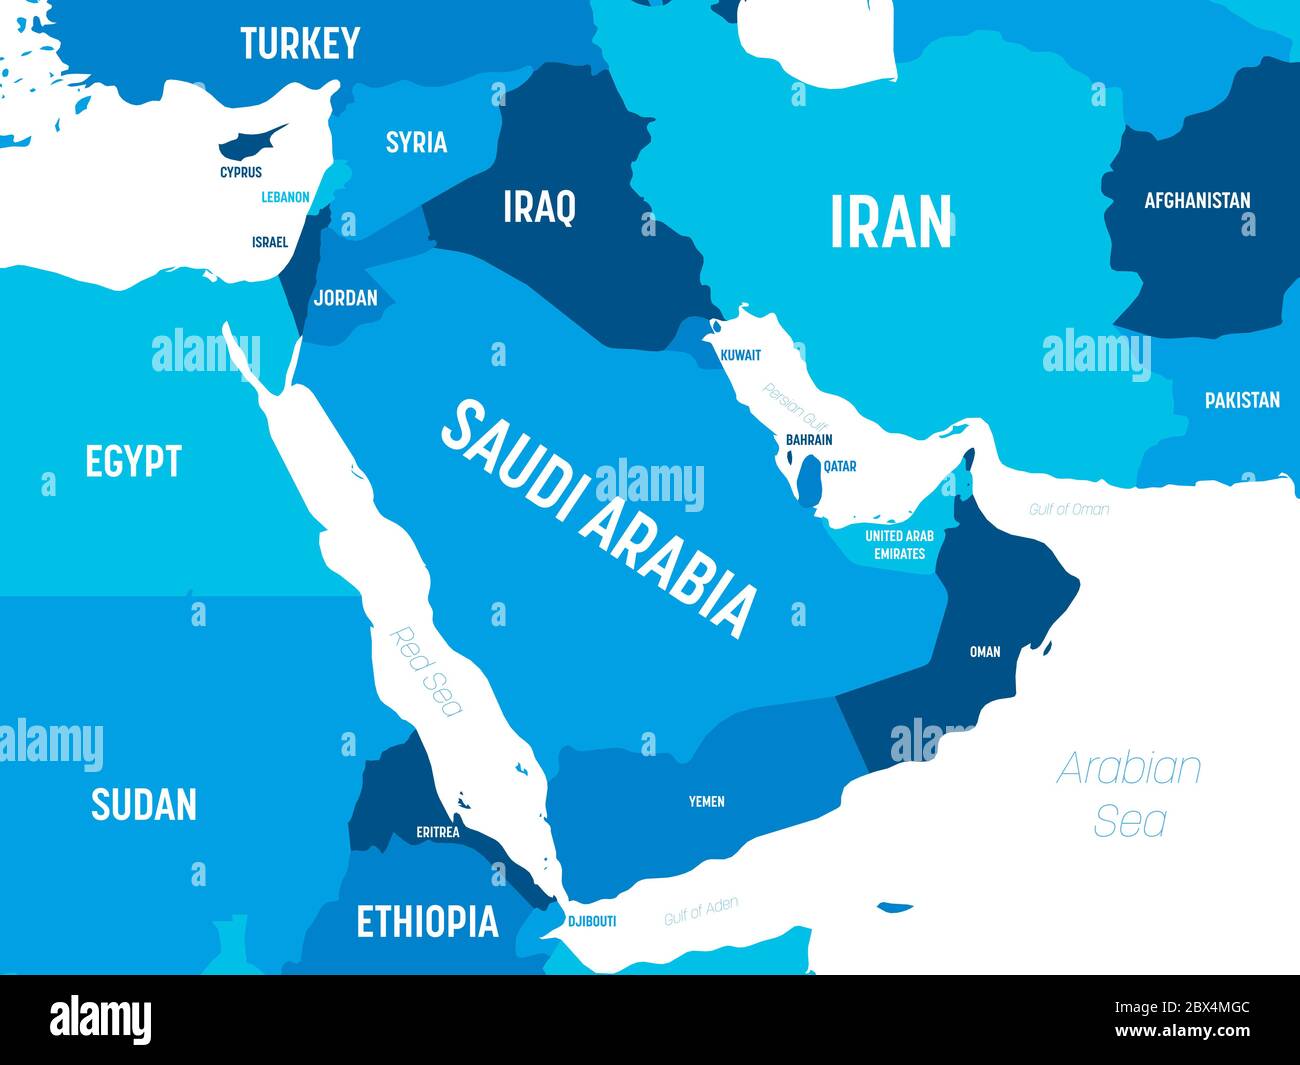 Karte des Nahen Ostens - grüner Farbton auf dunklem Hintergrund. Detaillierte politische Karte des Nahen Ostens und der arabischen Halbinsel mit Land-, Kapital-, Ozean- und Meeresnamen. Stock Vektor